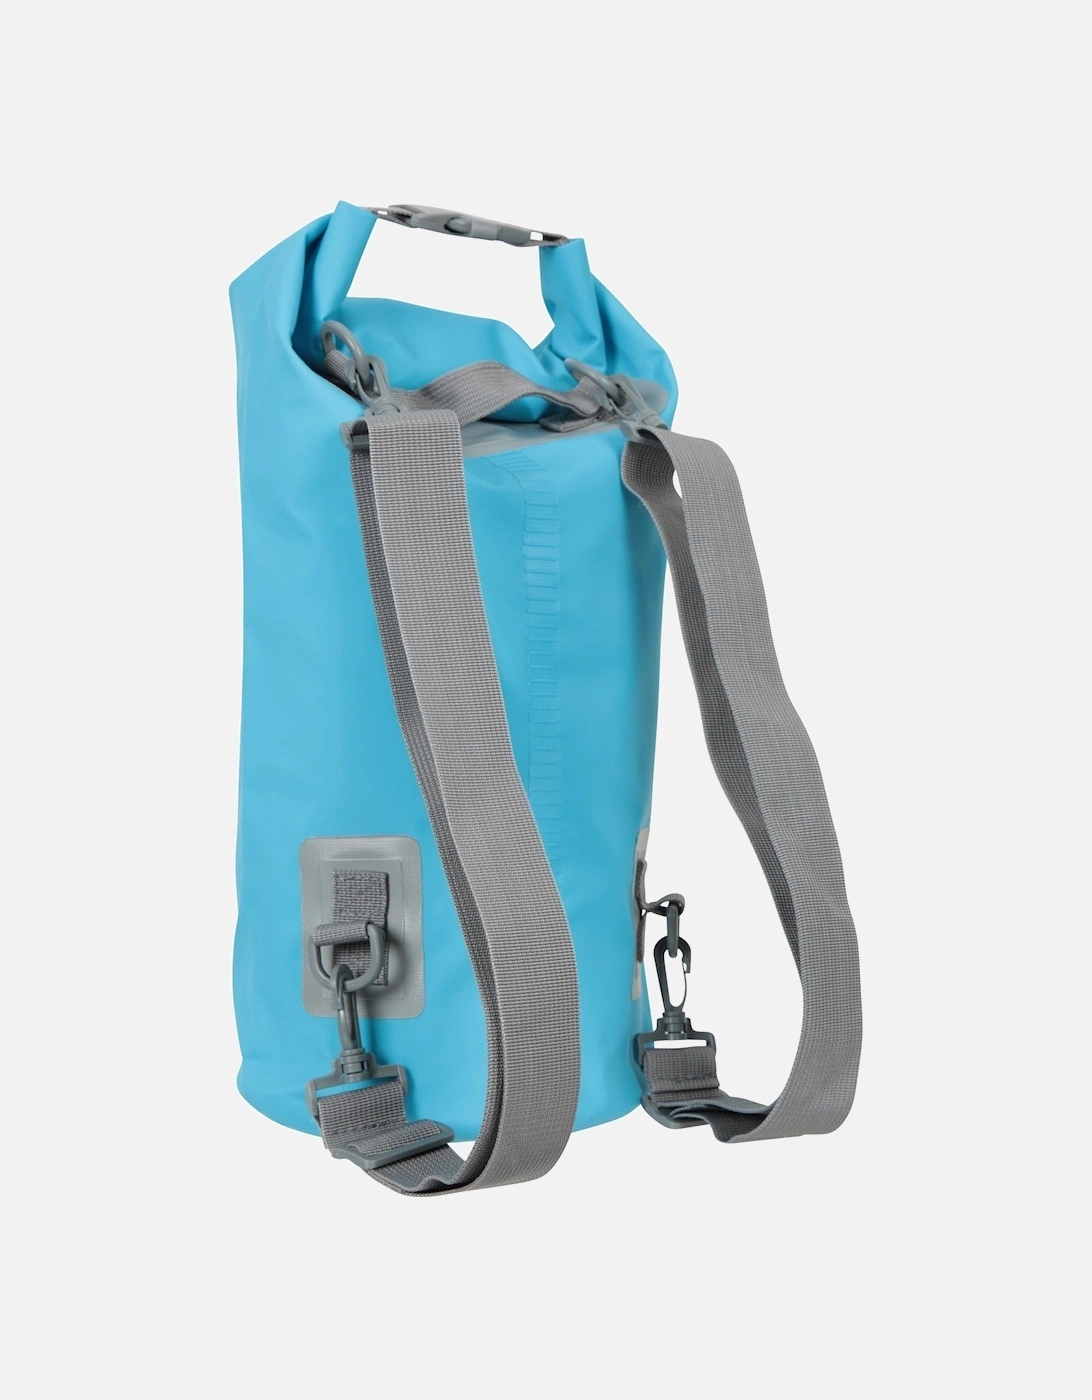 Waterproof 10L Dry Bag